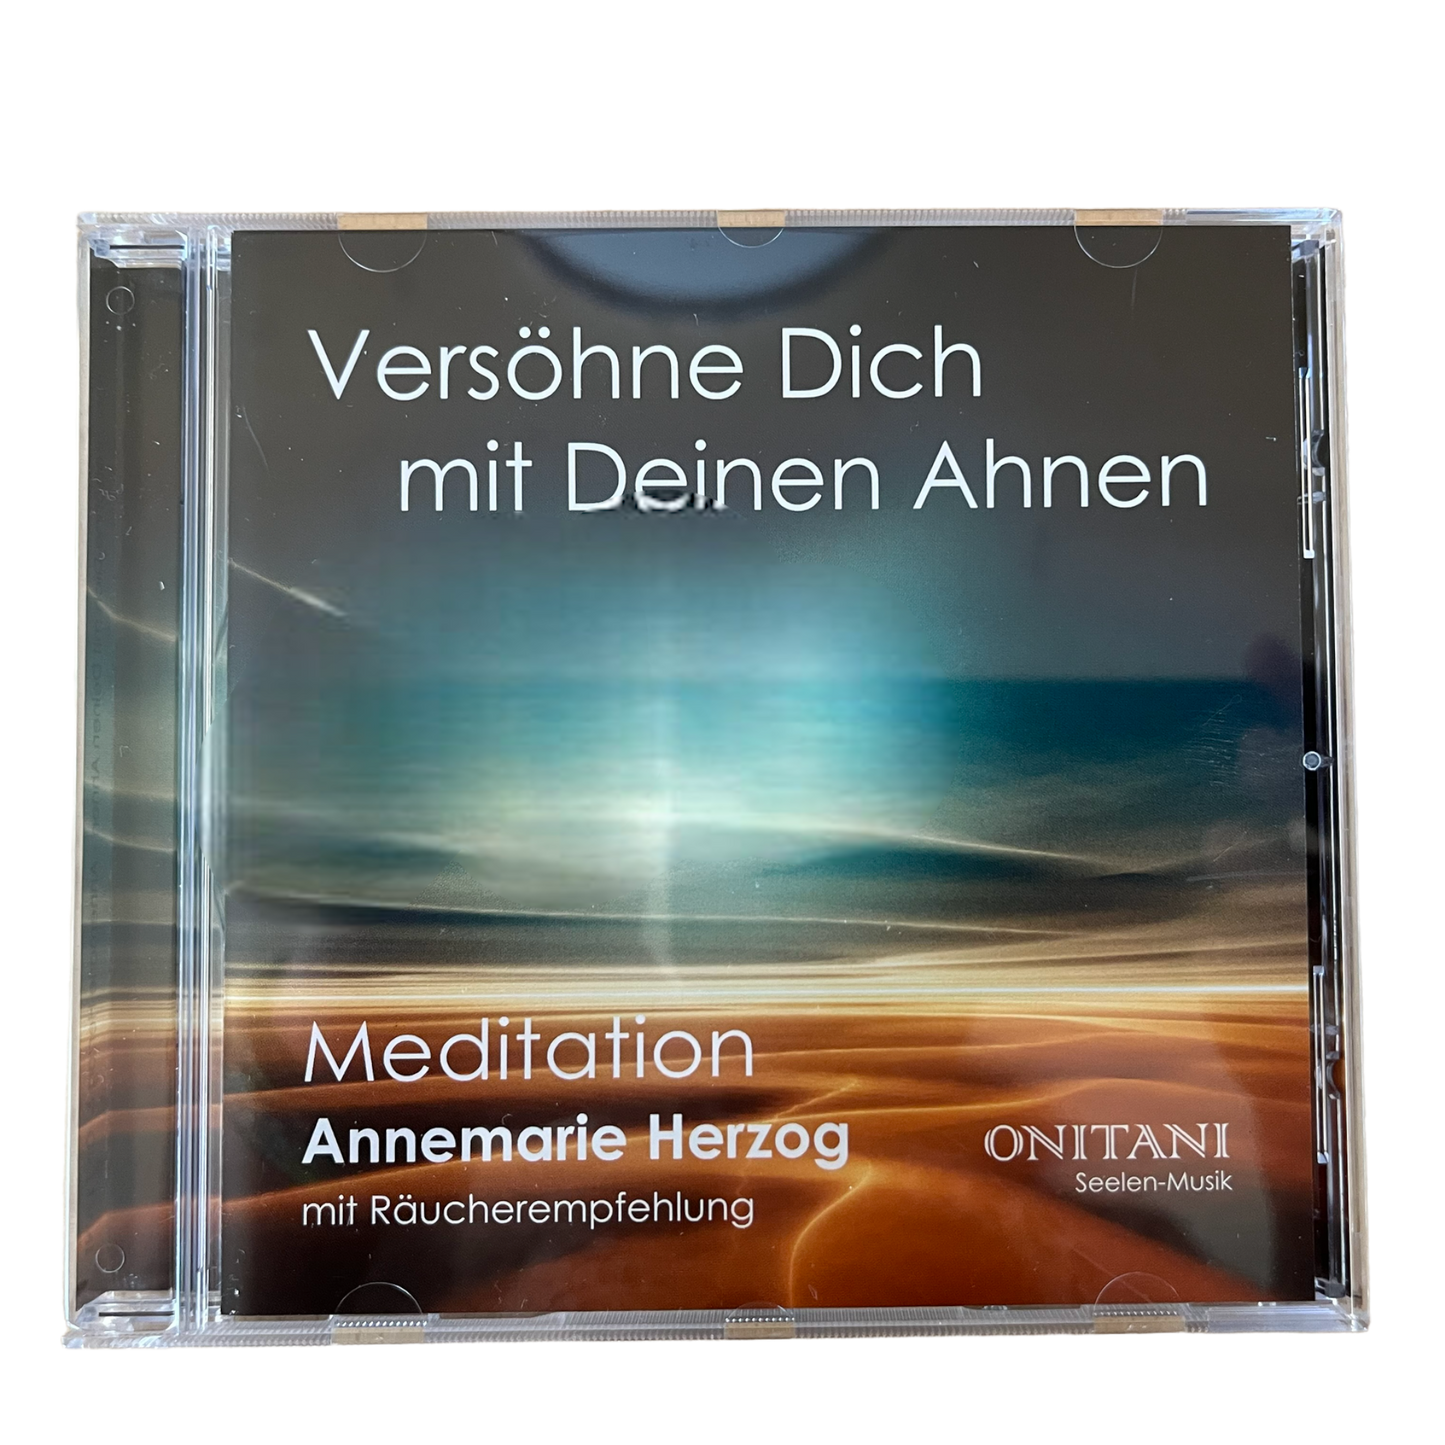 Meditations CD “Versöhne Dich mit Deinen Ahnen”